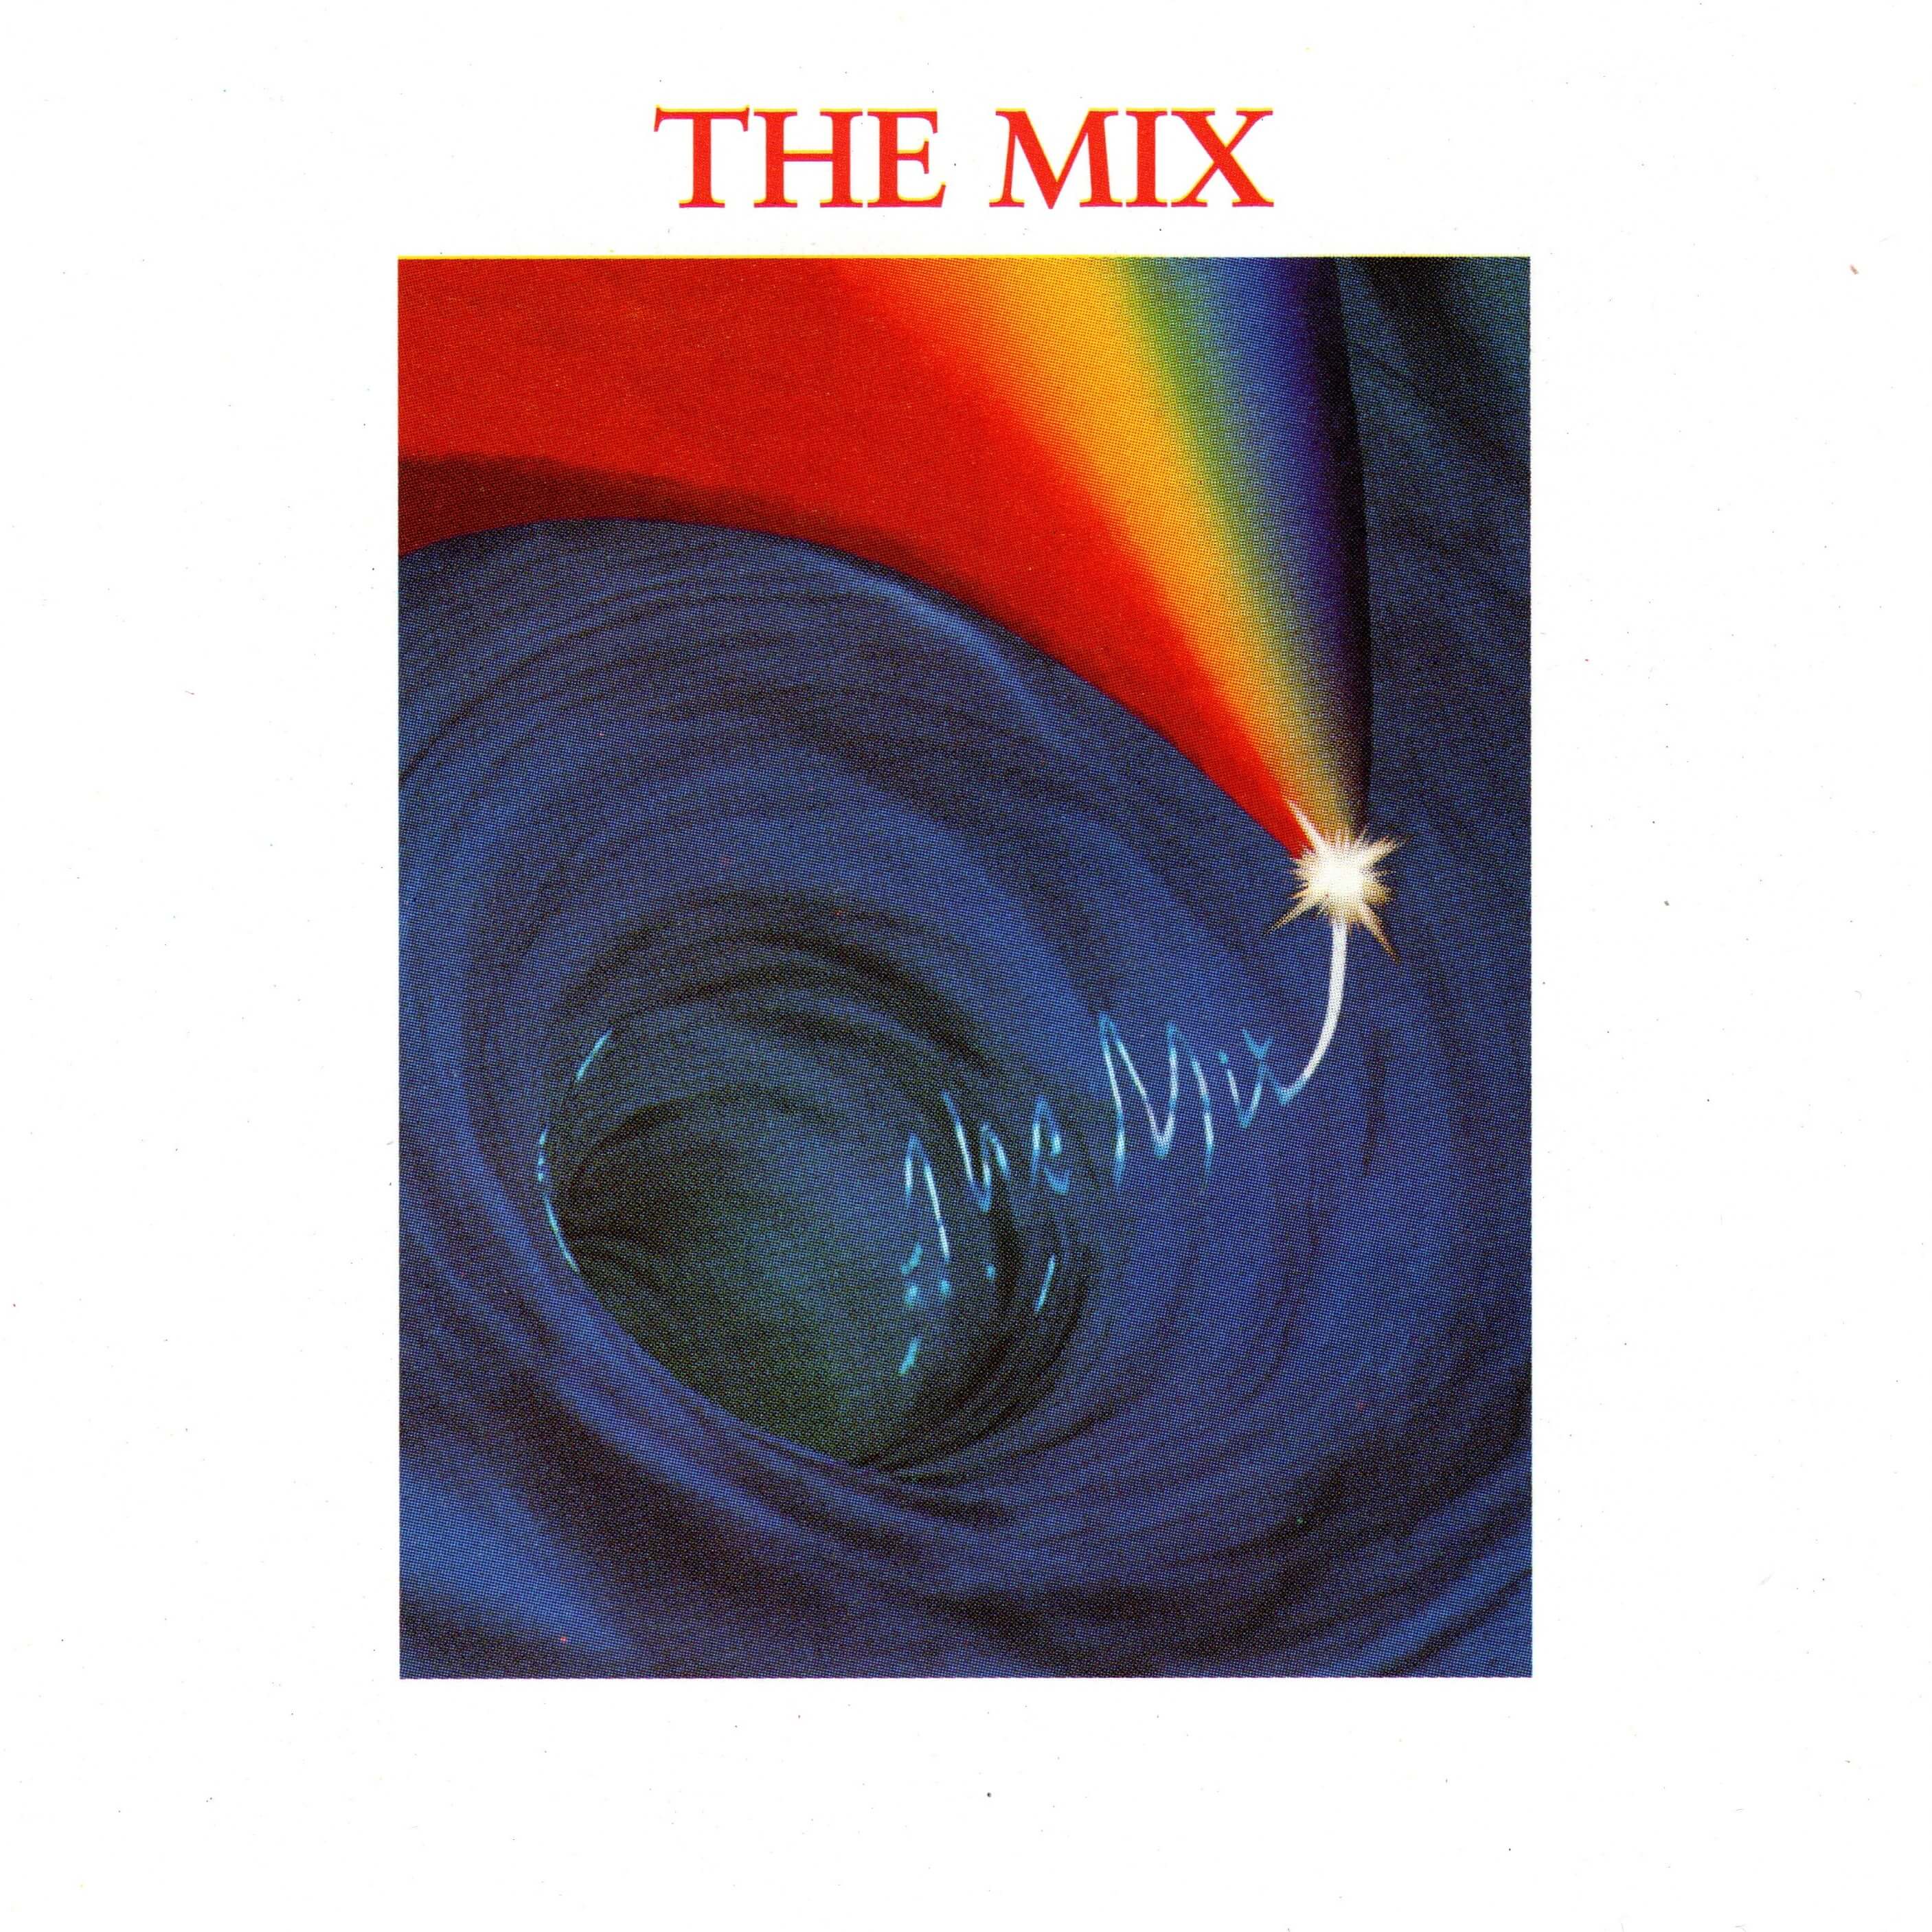 The Mix (BBC Transcription Disc)